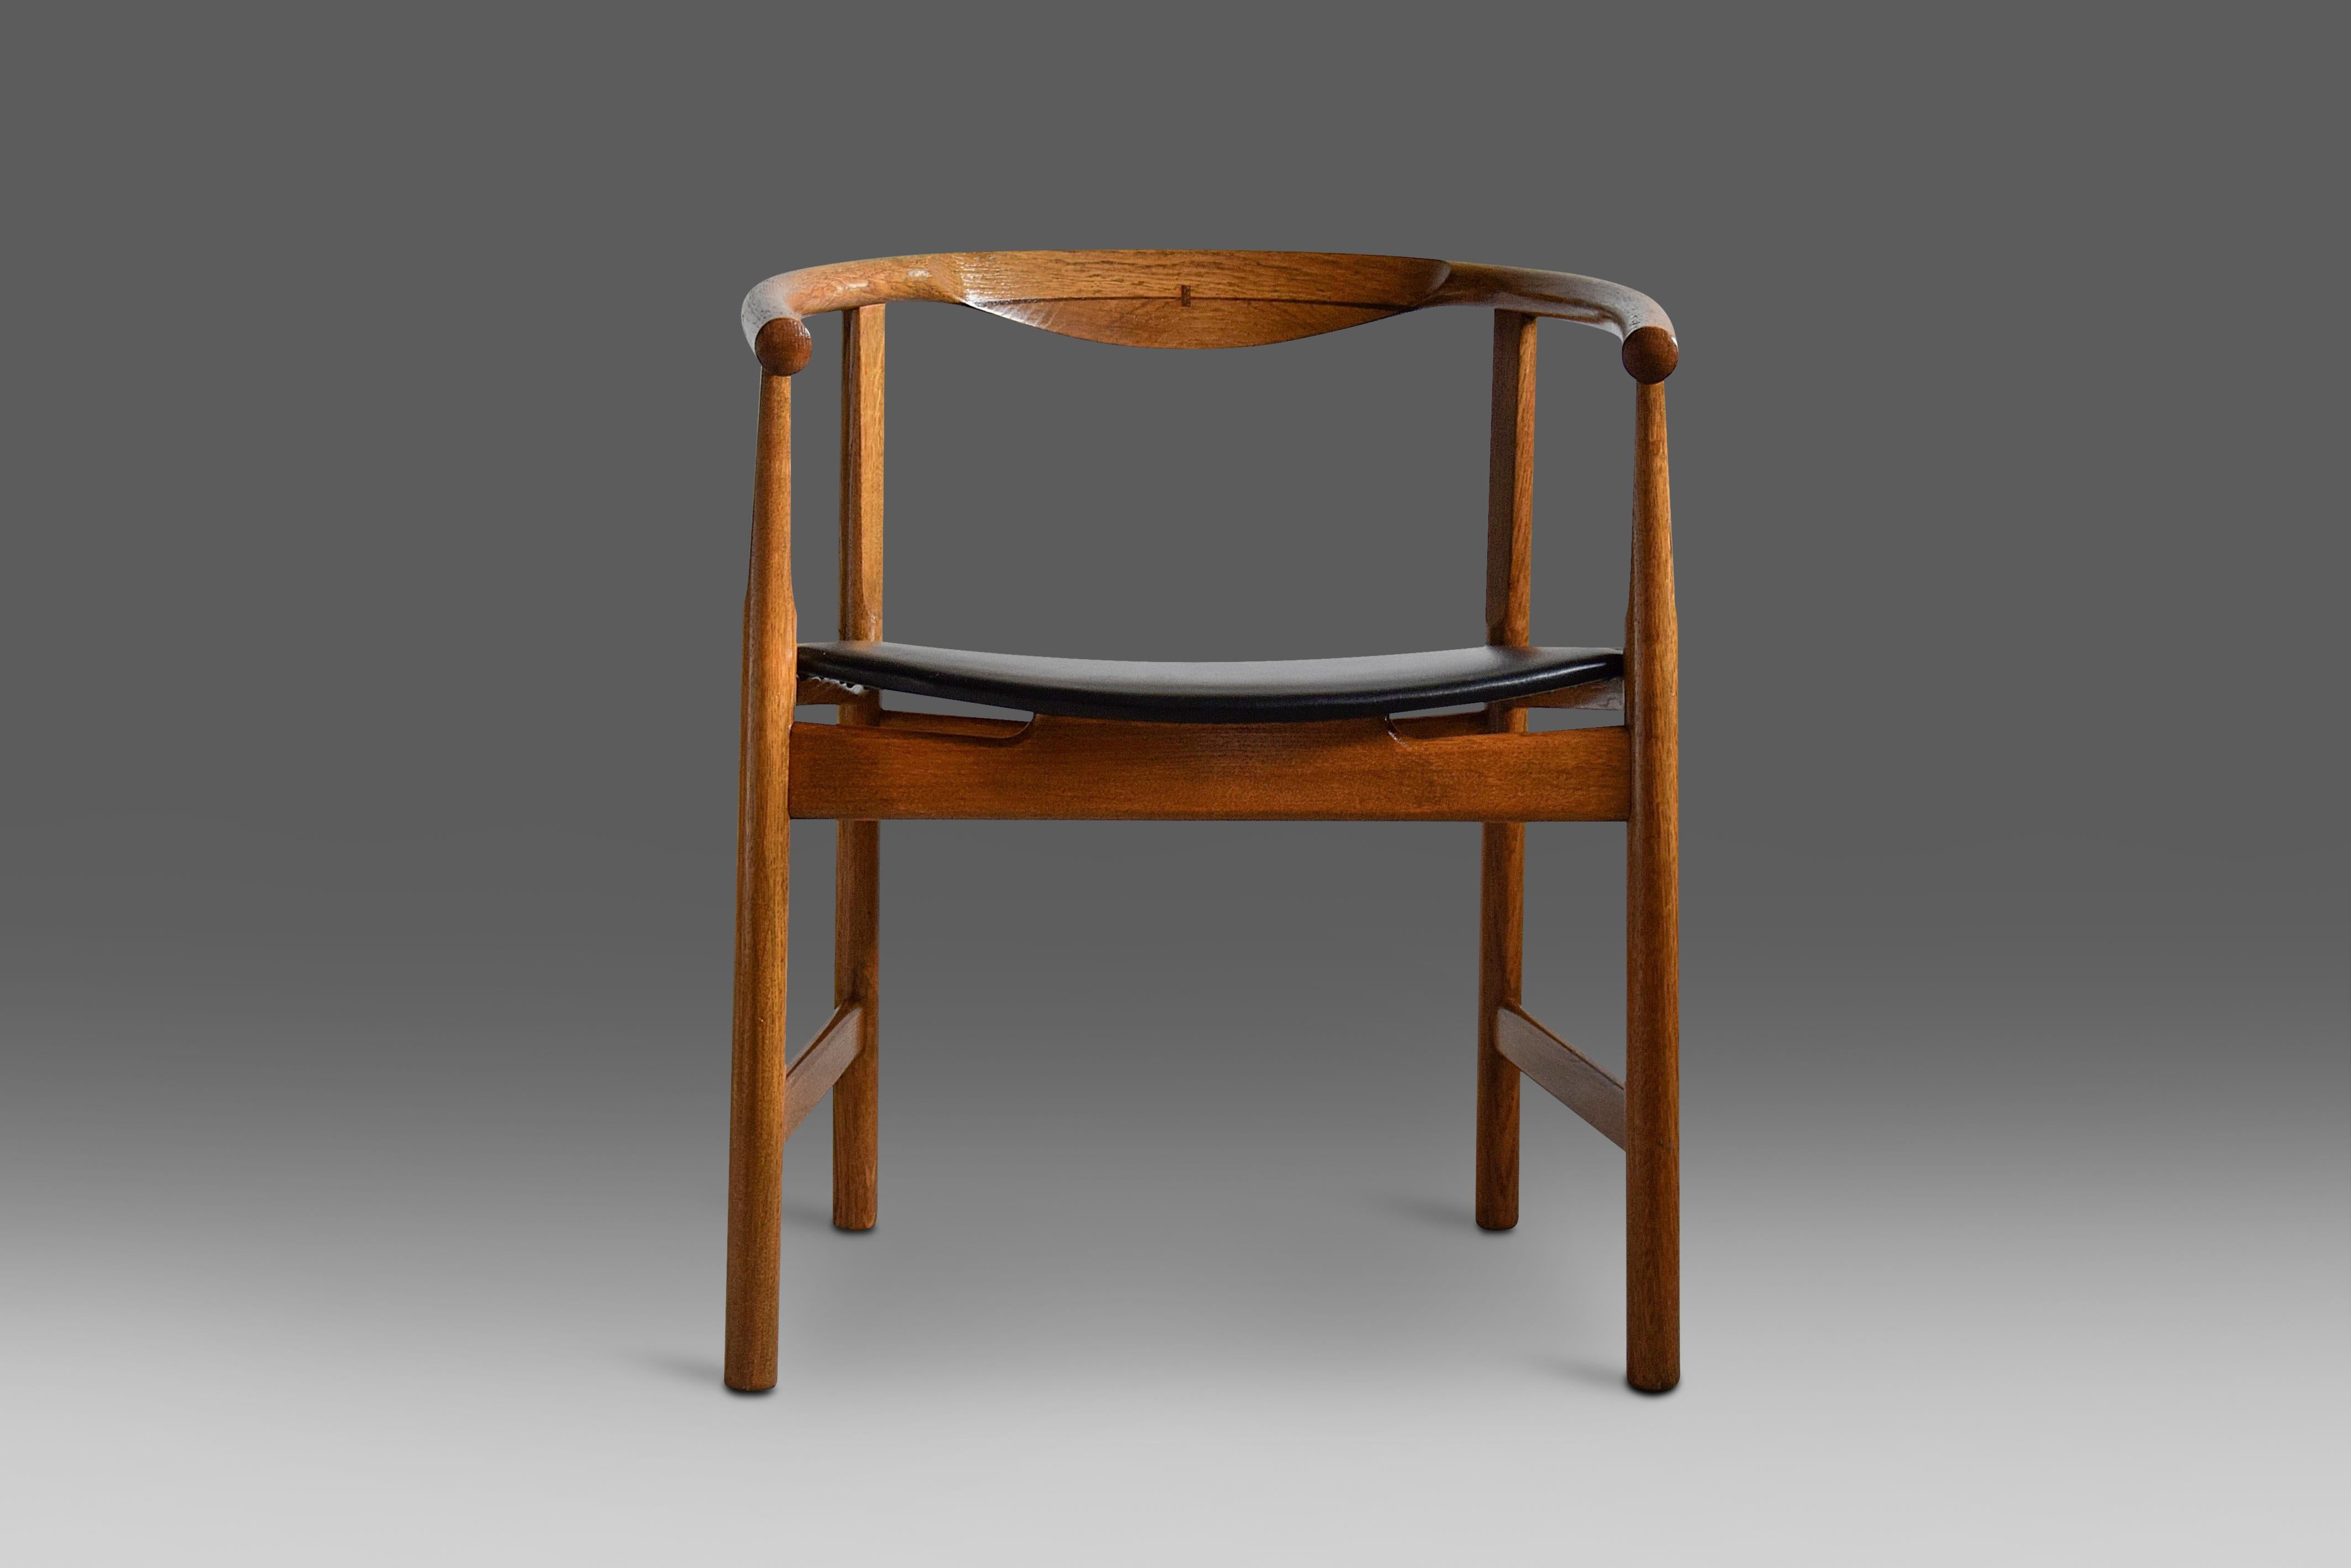 Un ensemble rare et étonnant de chaises PP 203 conçues par Hans Wegner en 1969 et produites au tout début de cette période. L'ensemble est en excellent état et, au cours des 40 dernières années, le bois de chêne a été traité à l'huile. Un ensemble